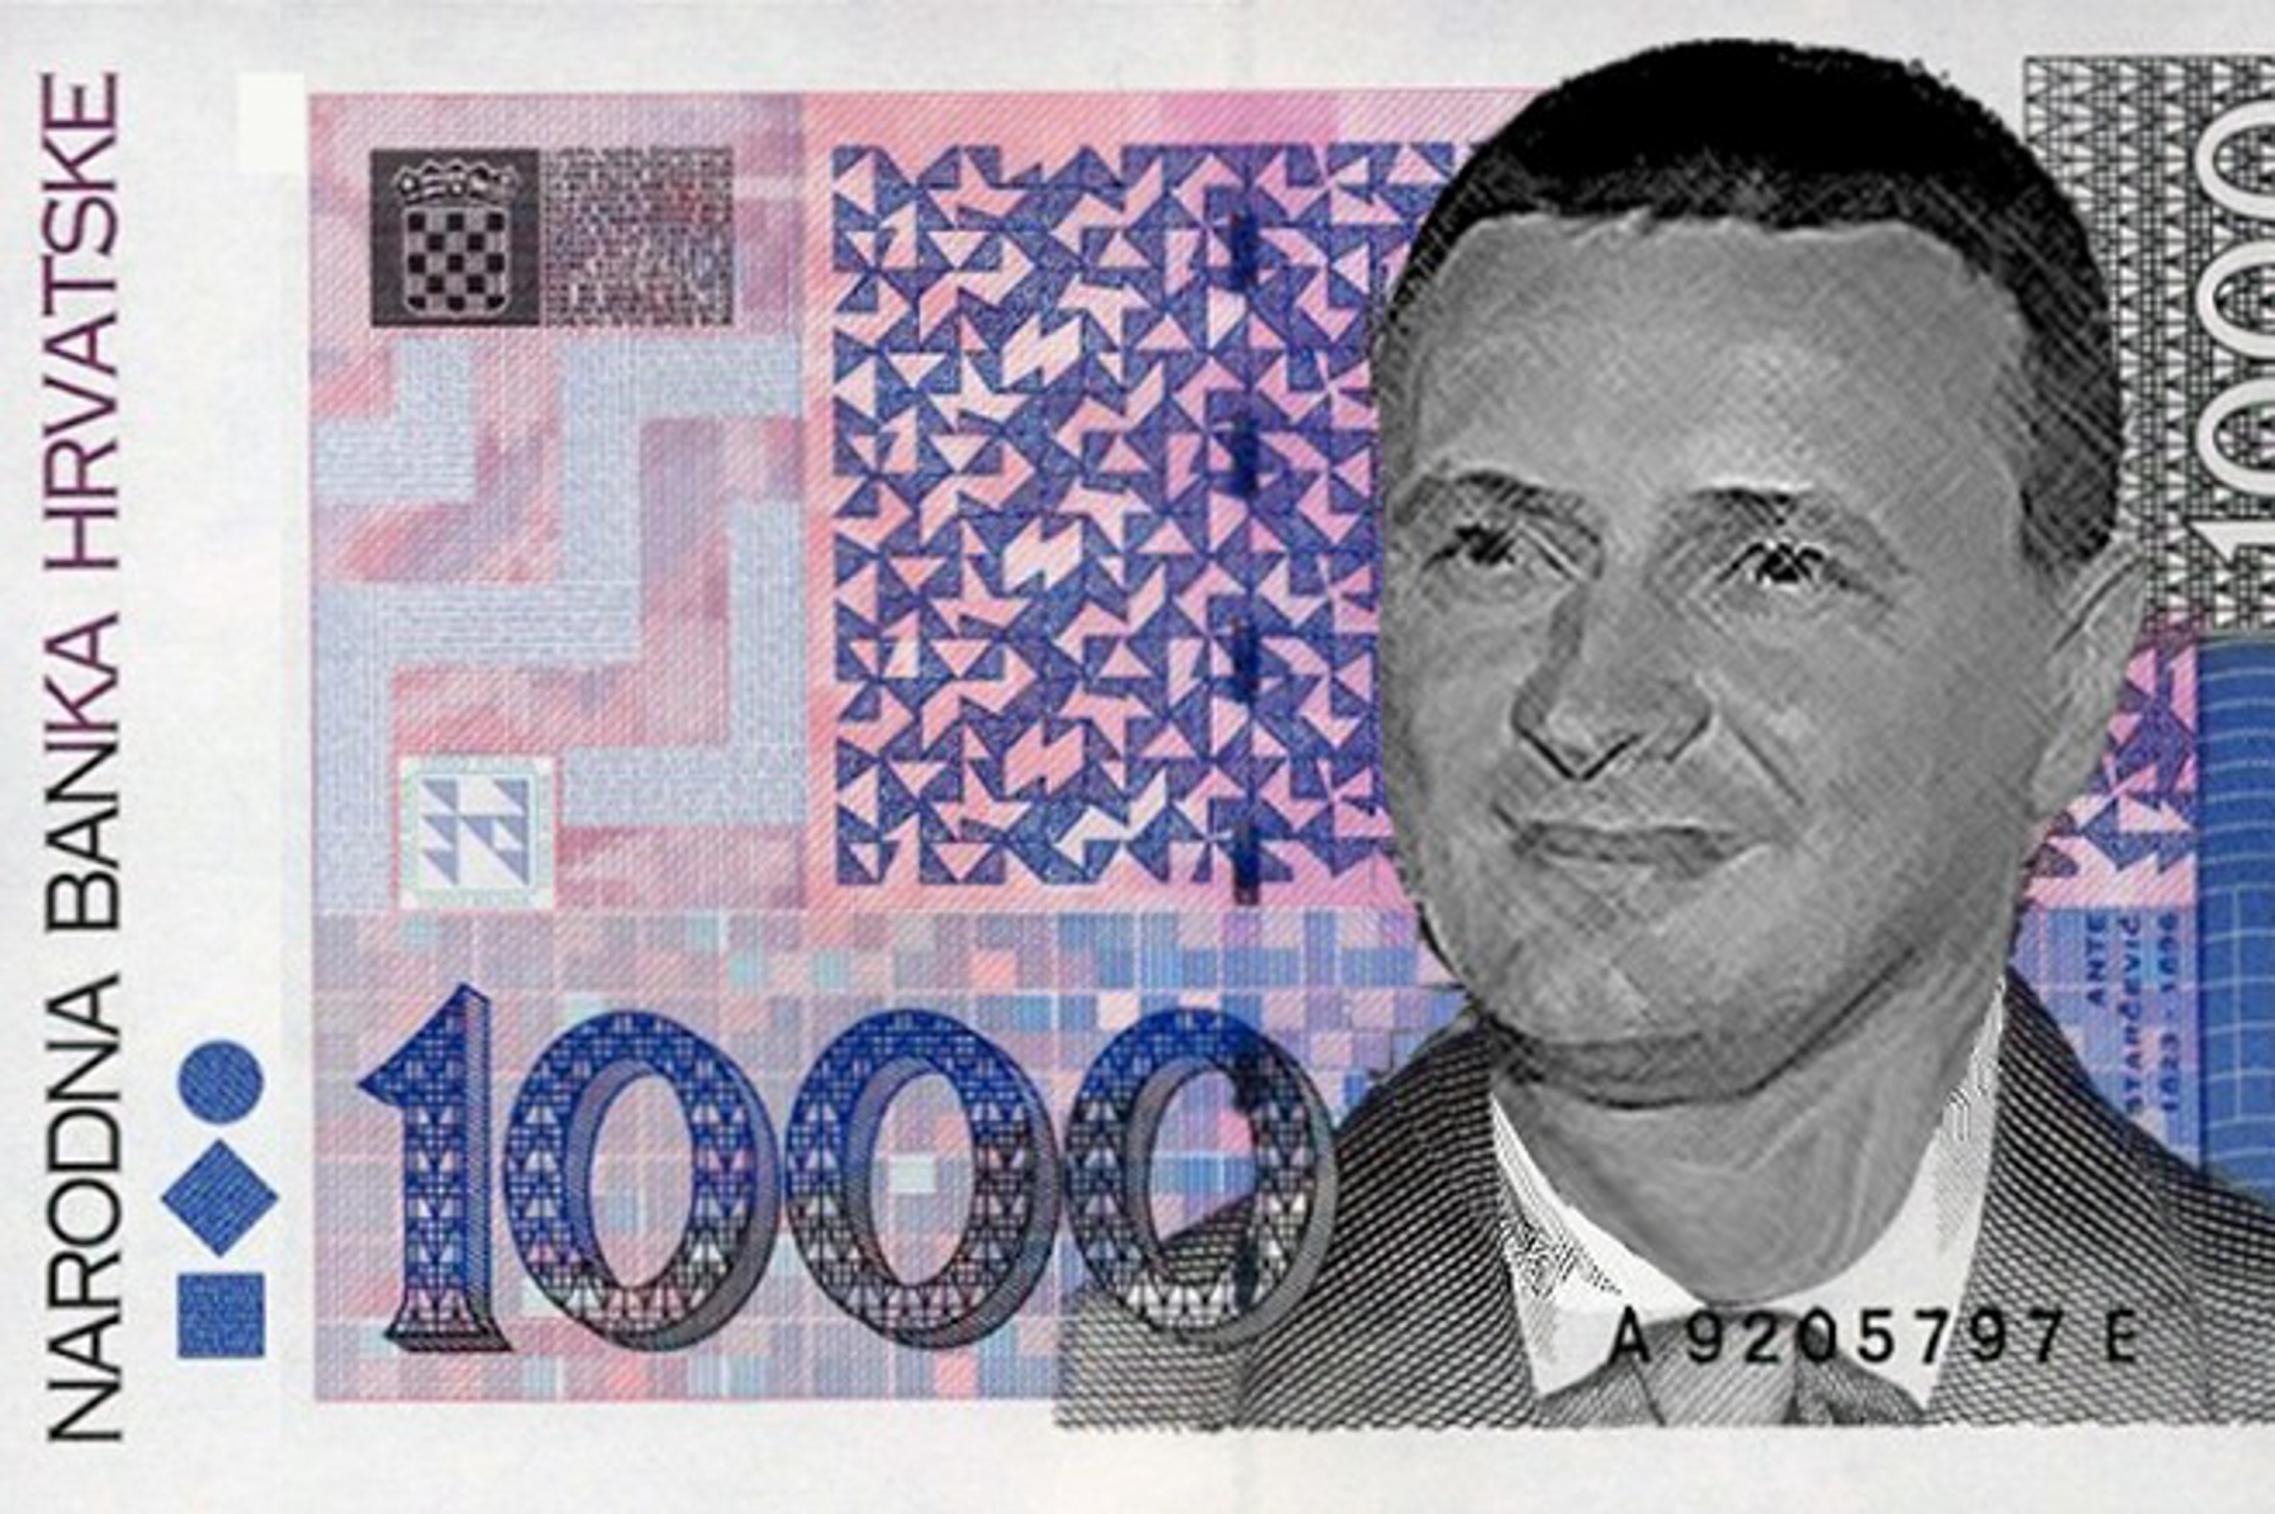 Krivotvorena novčanica od 1000 kuna